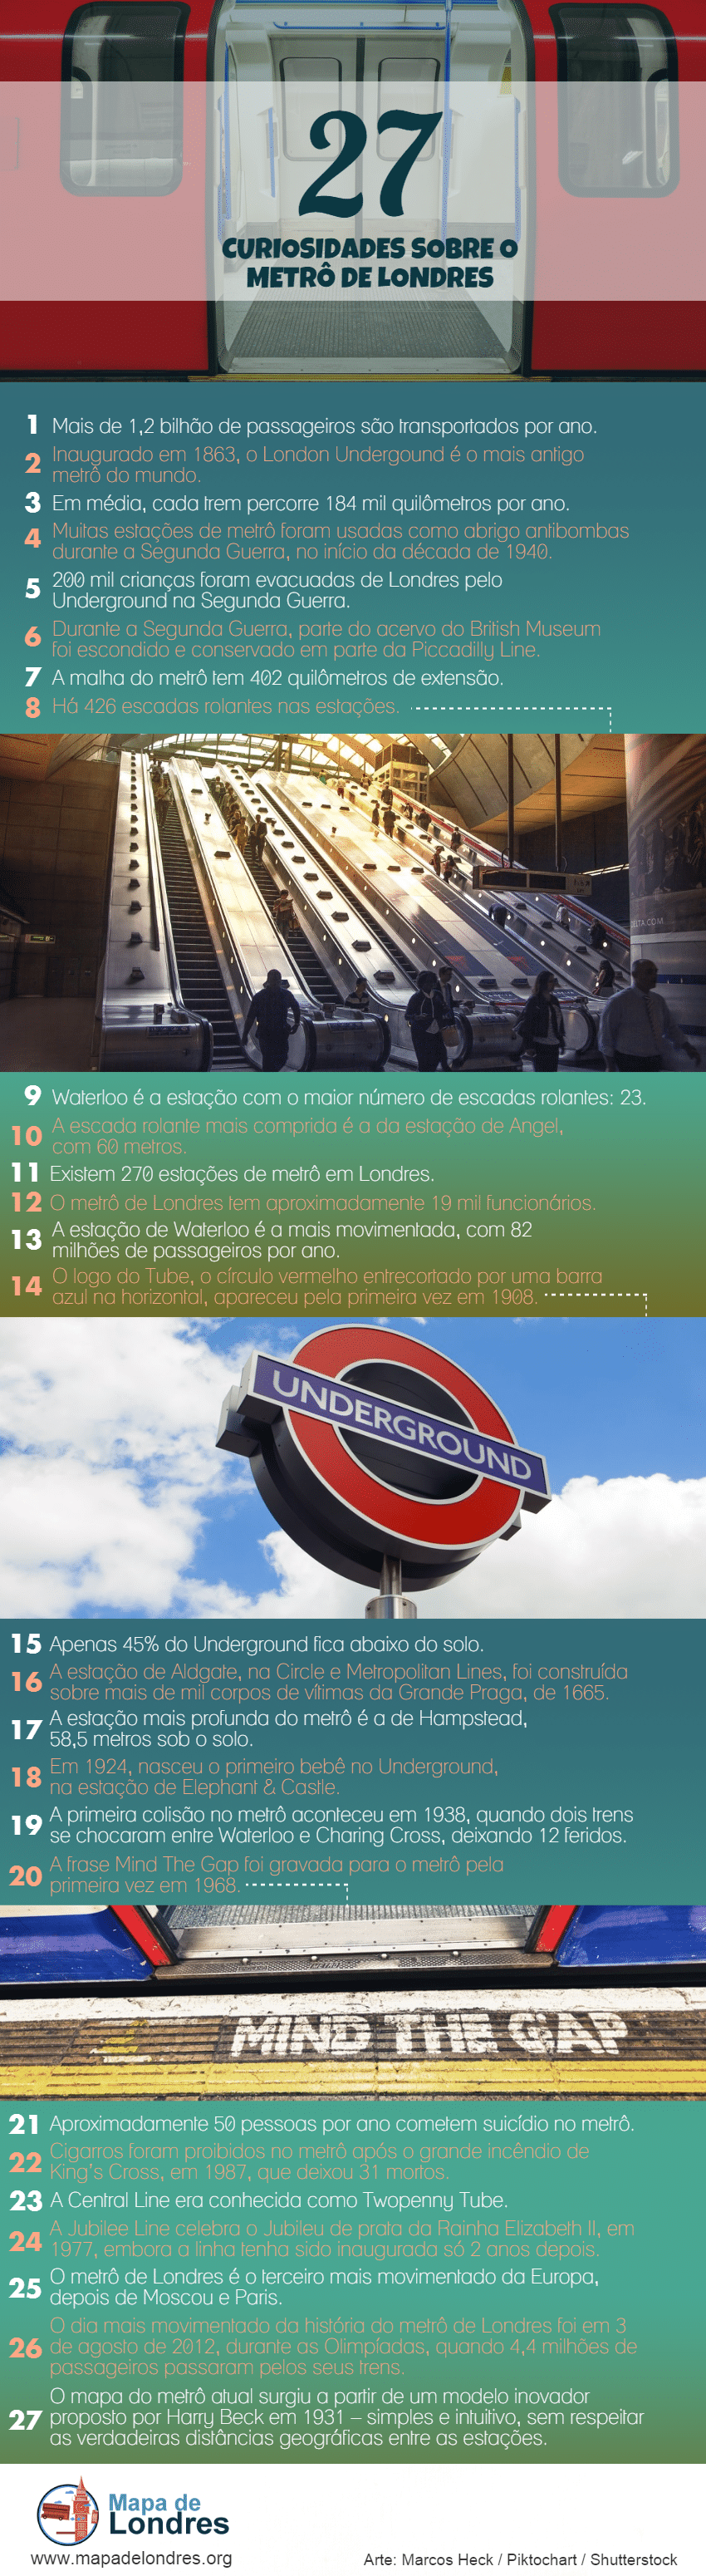 Mapa de Londres - Curiosidades sobre o metrô de Londres